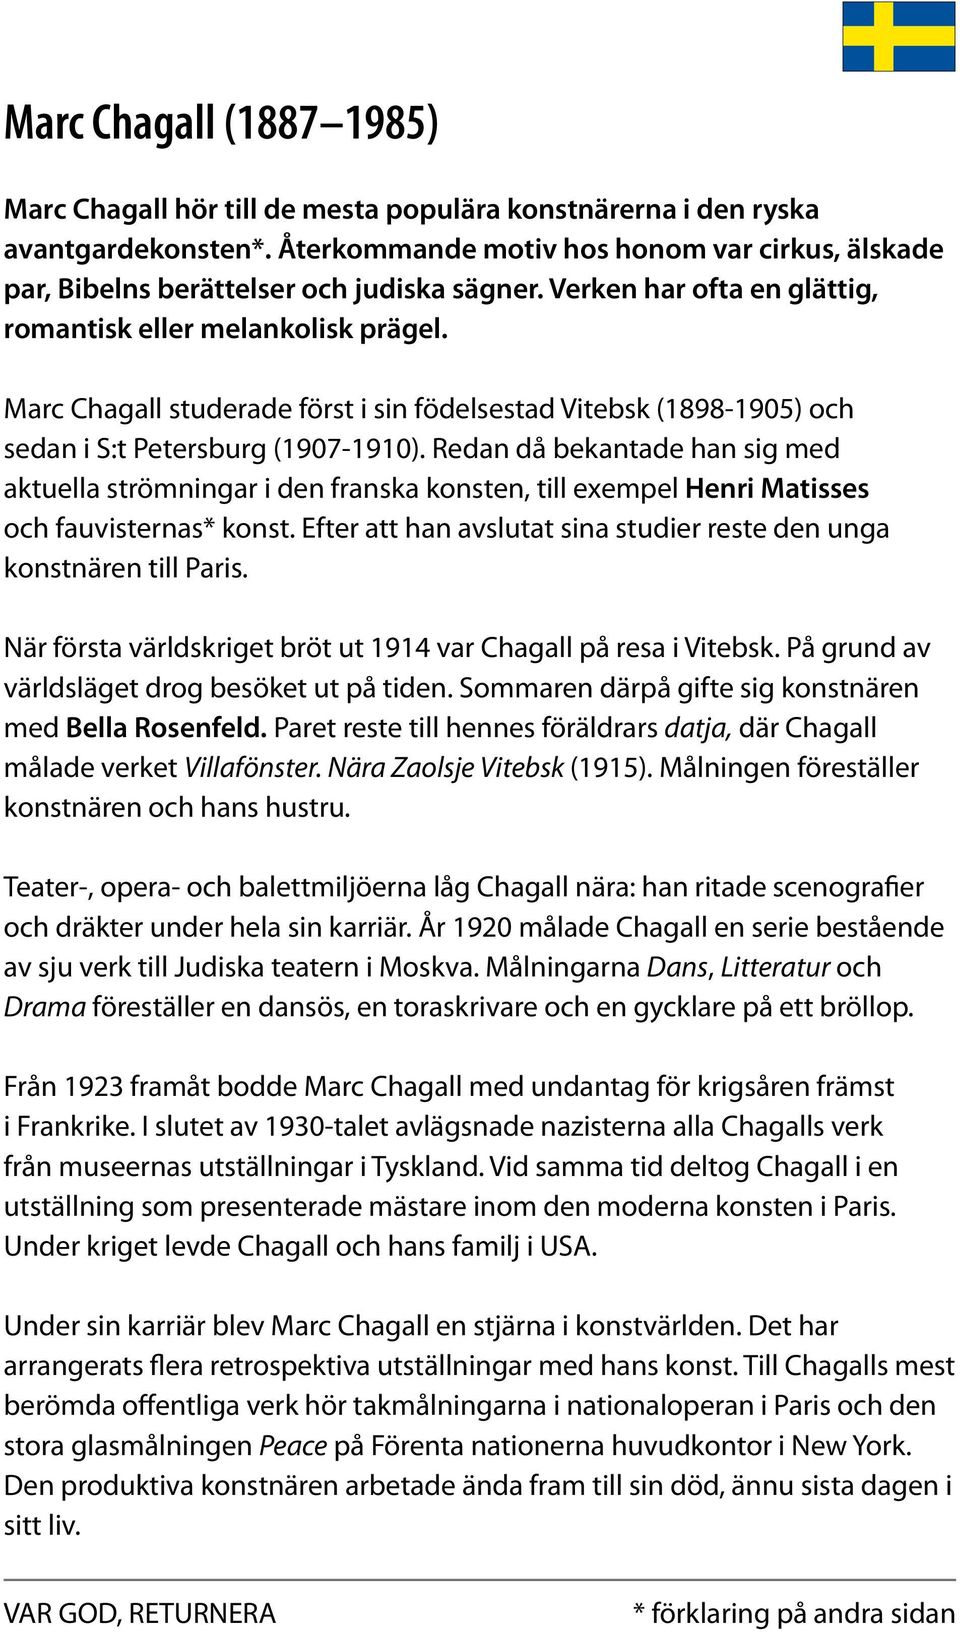 Marc Chagall studerade först i sin födelsestad Vitebsk (1898-1905) och sedan i S:t Petersburg (1907-1910).